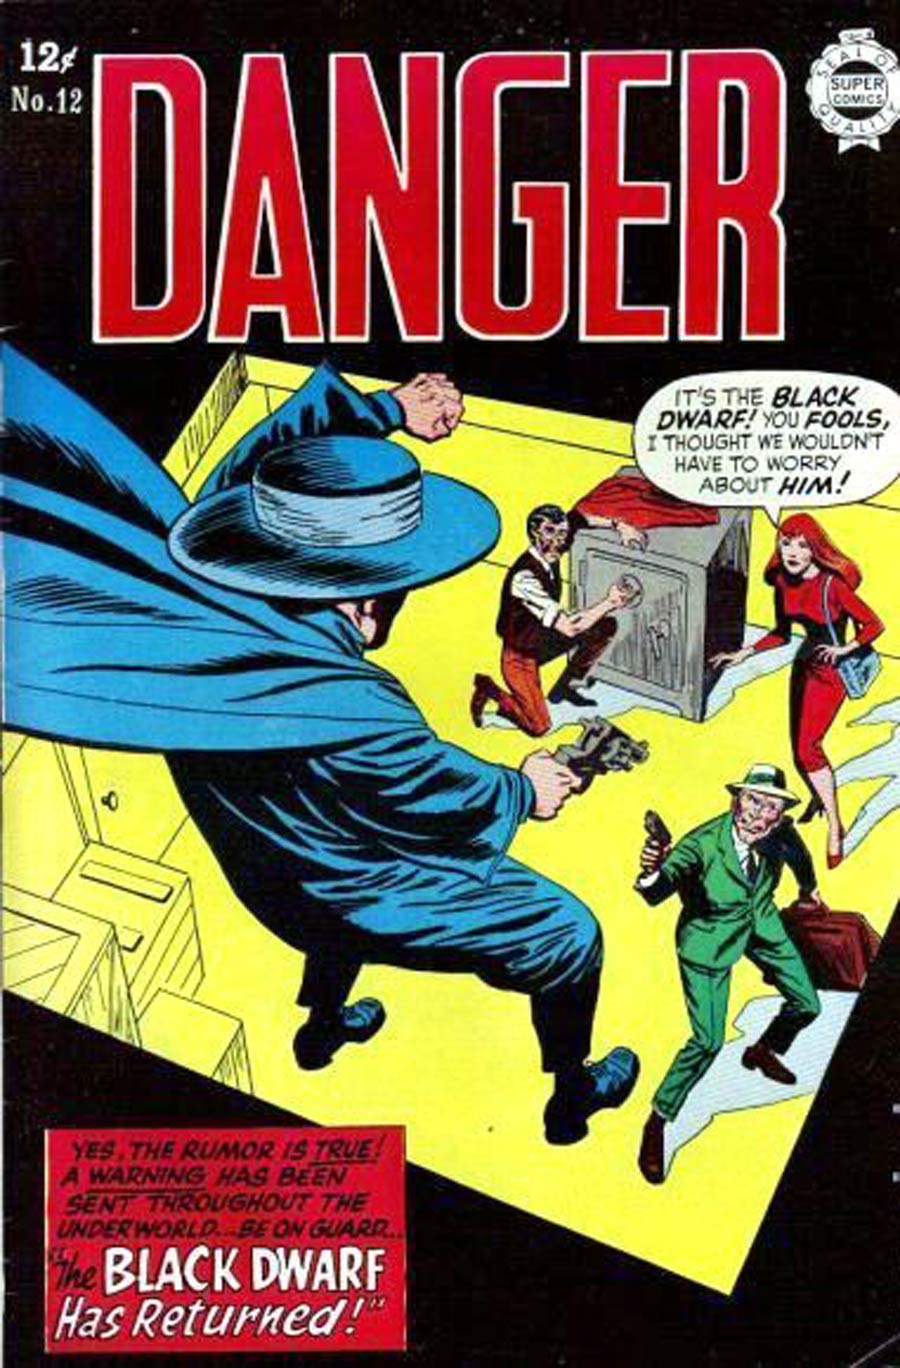 Danger (Super Comics) #12